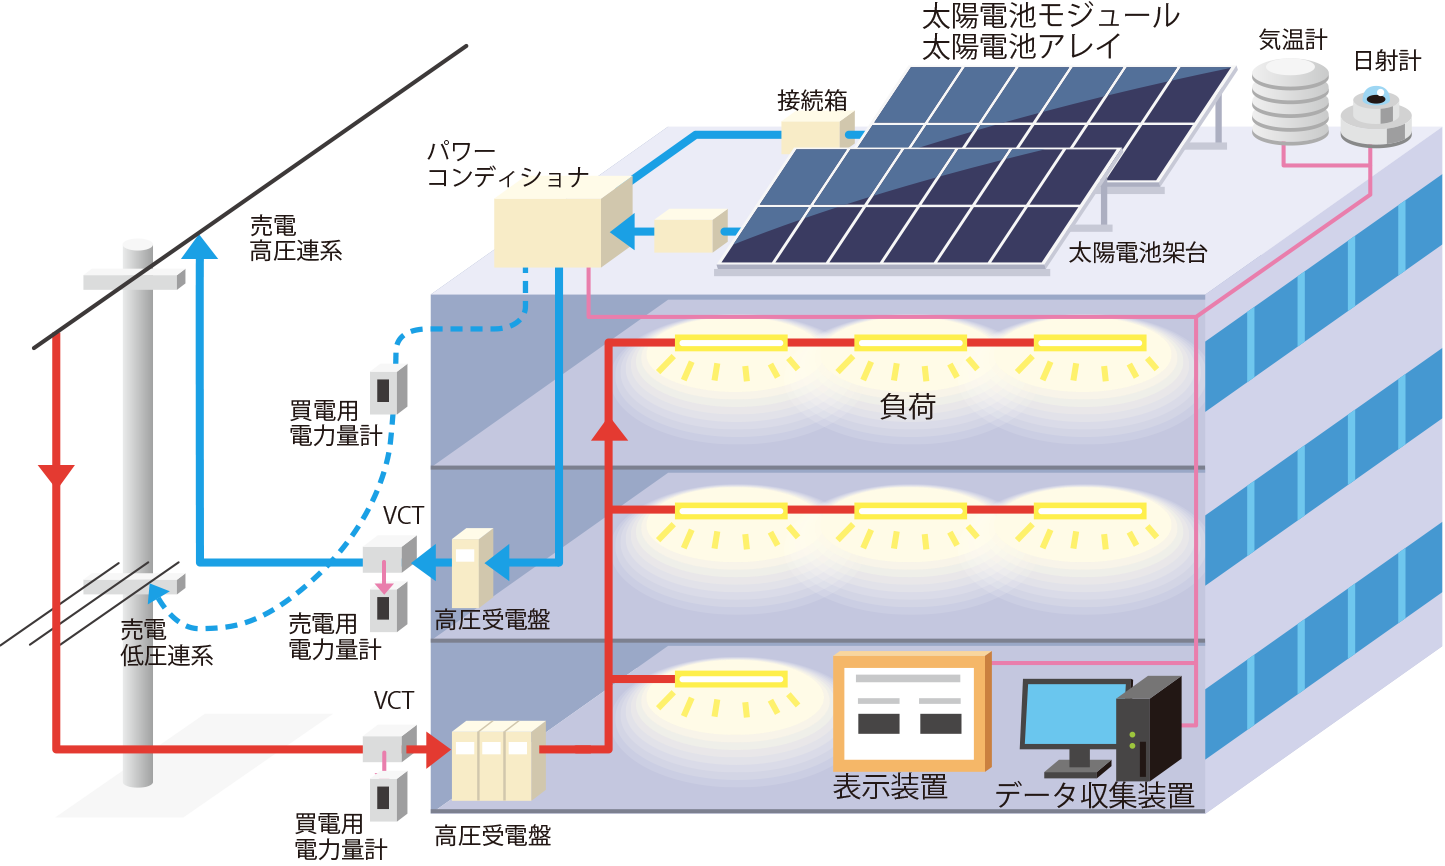 産業用太陽光発電システムとは - JPEA 太陽光発電協会